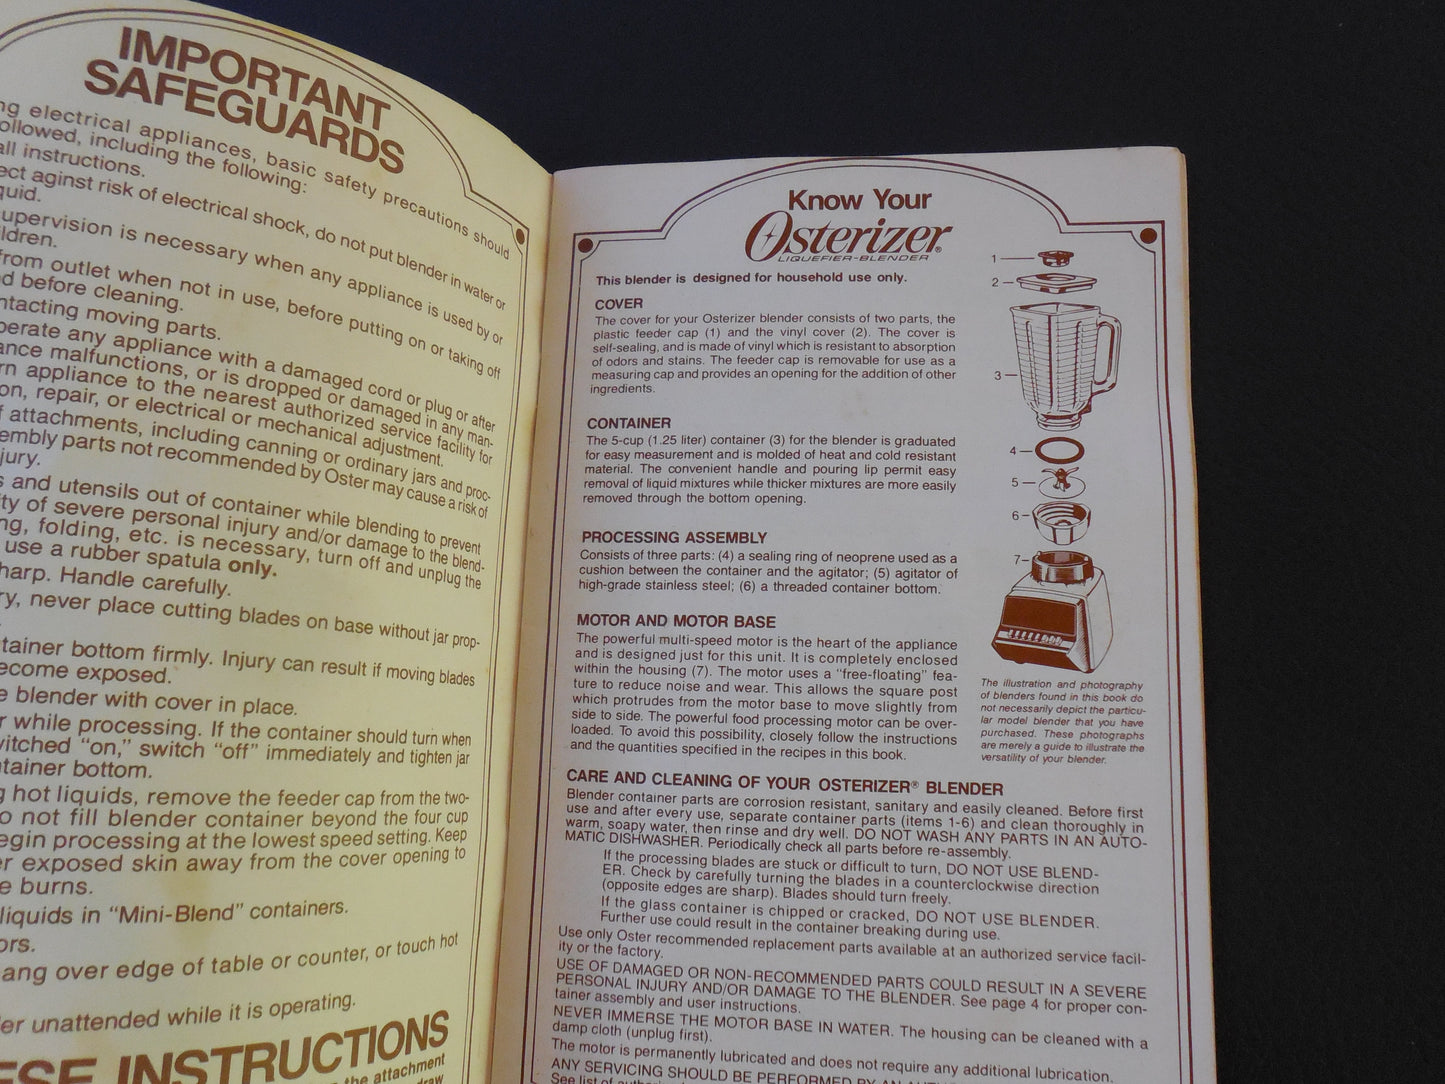 Osterizer 1984 Oster Blender Cookbook Recipe Instruction Manual Booklet vintage